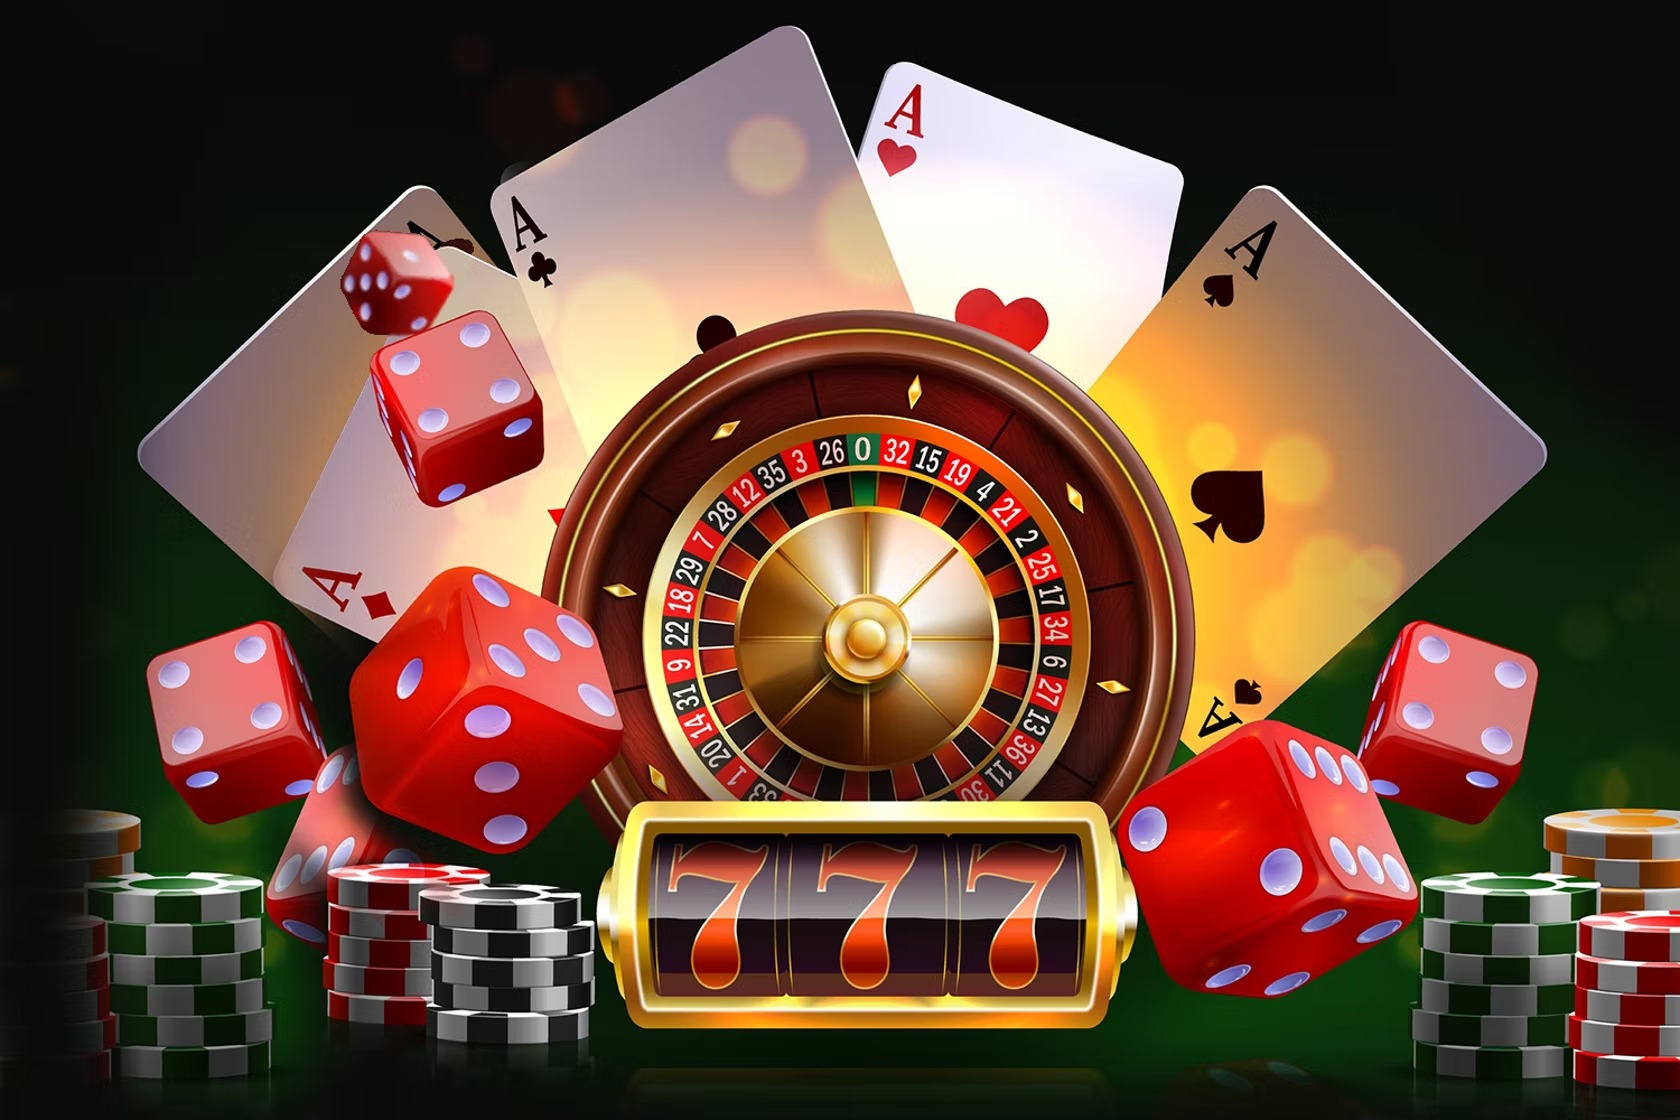 Τα χρήματα που μπορείτε να κερδίσετε στα online καζίνο στην Ελλάδα
